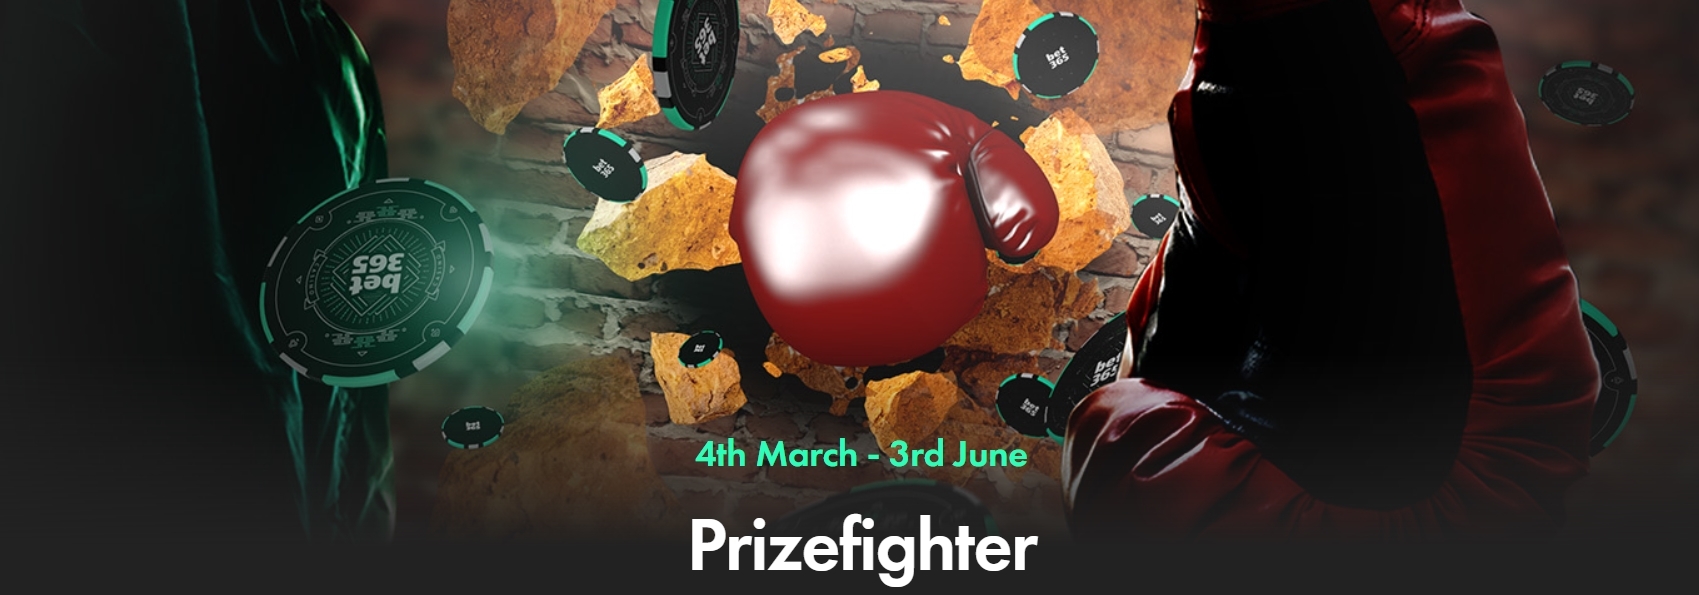 Prizefighter Poker Promotion